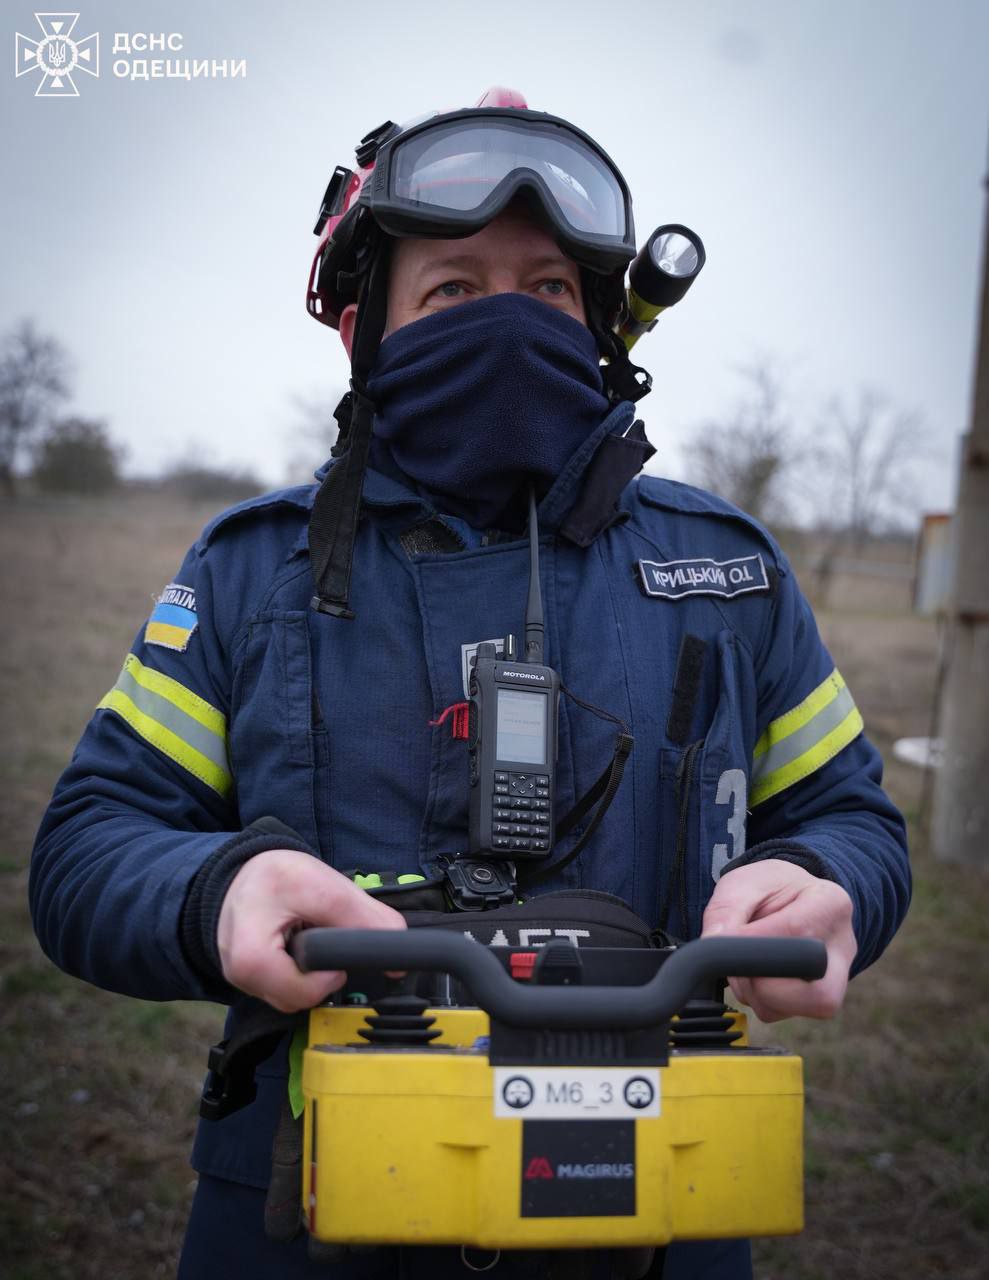 Робот помог спасателям потушить пожар на месте российского удара под Одессой: фото — фото